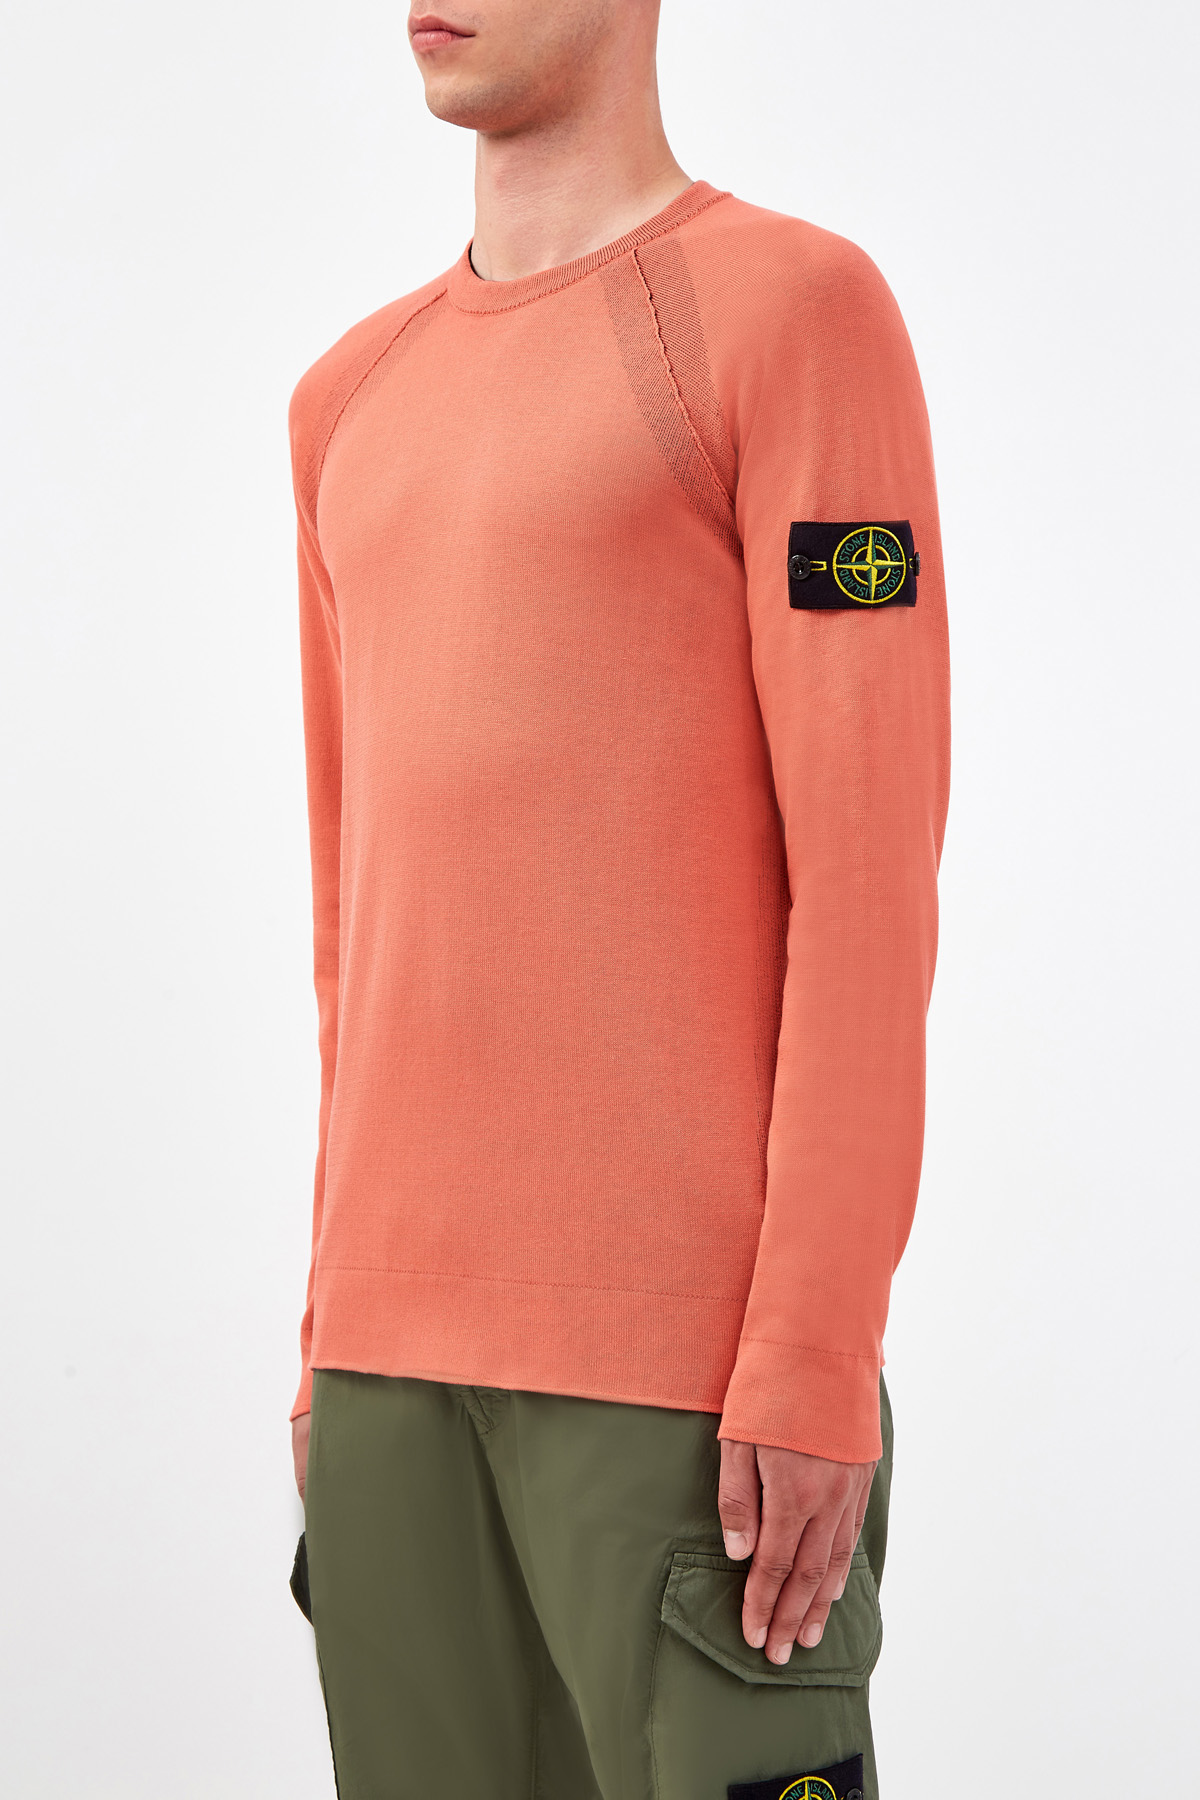 Хлопковый джемпер из легкой пряжи Reversible Knit с двухцветным эффектом STONE ISLAND, размер 50;52;54;56;48 - фото 3